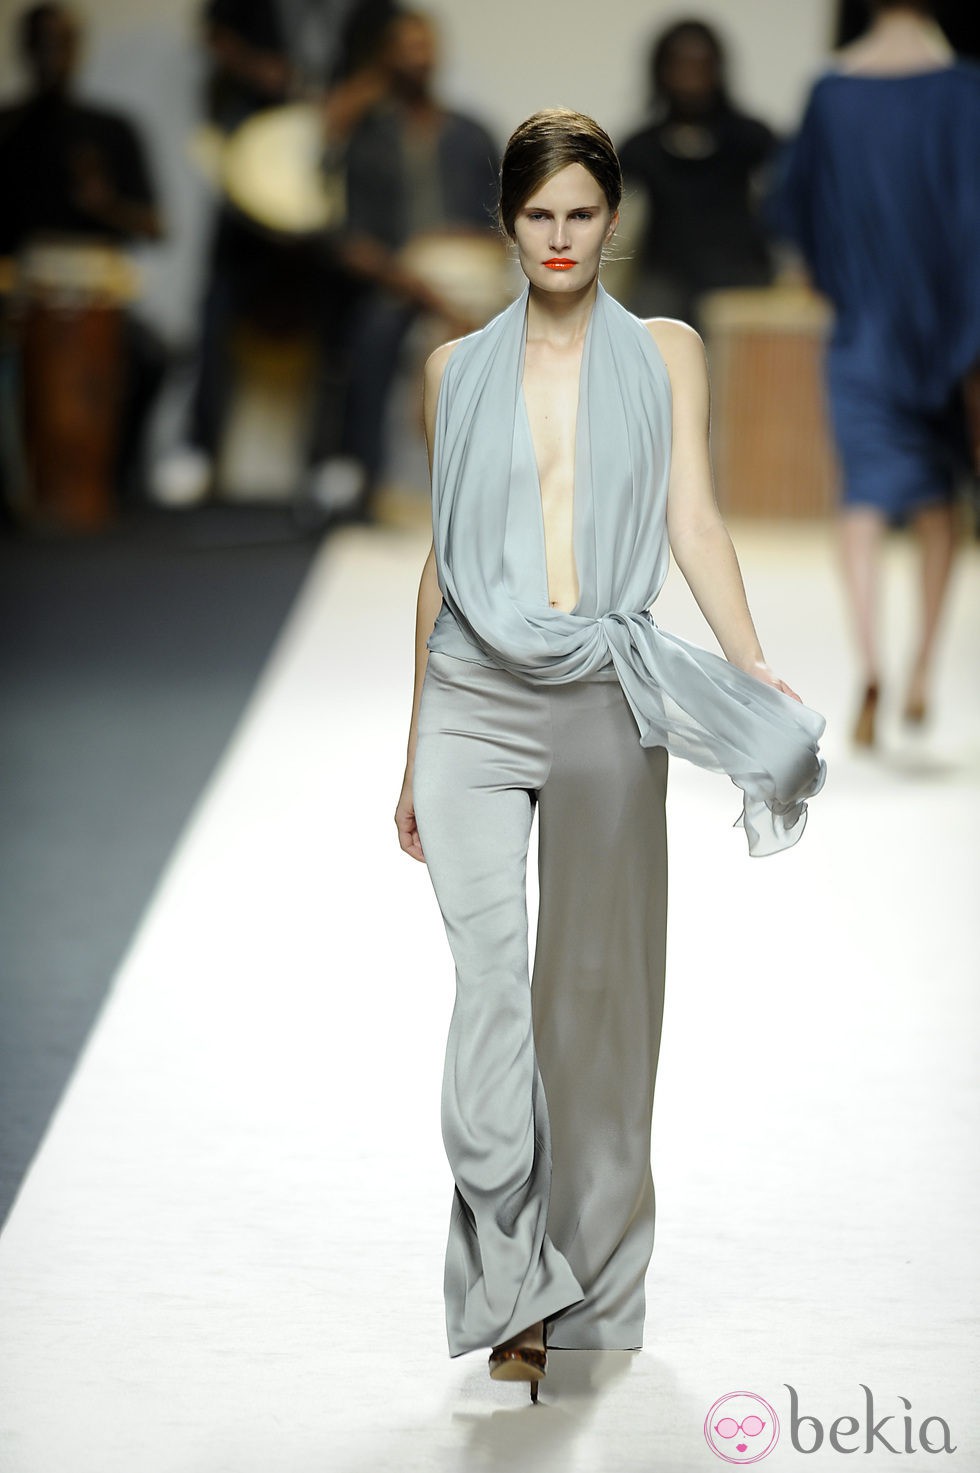 Conjunto con escote y pantalón gris de Duyos para primavera 2012 en Cibeles 2011